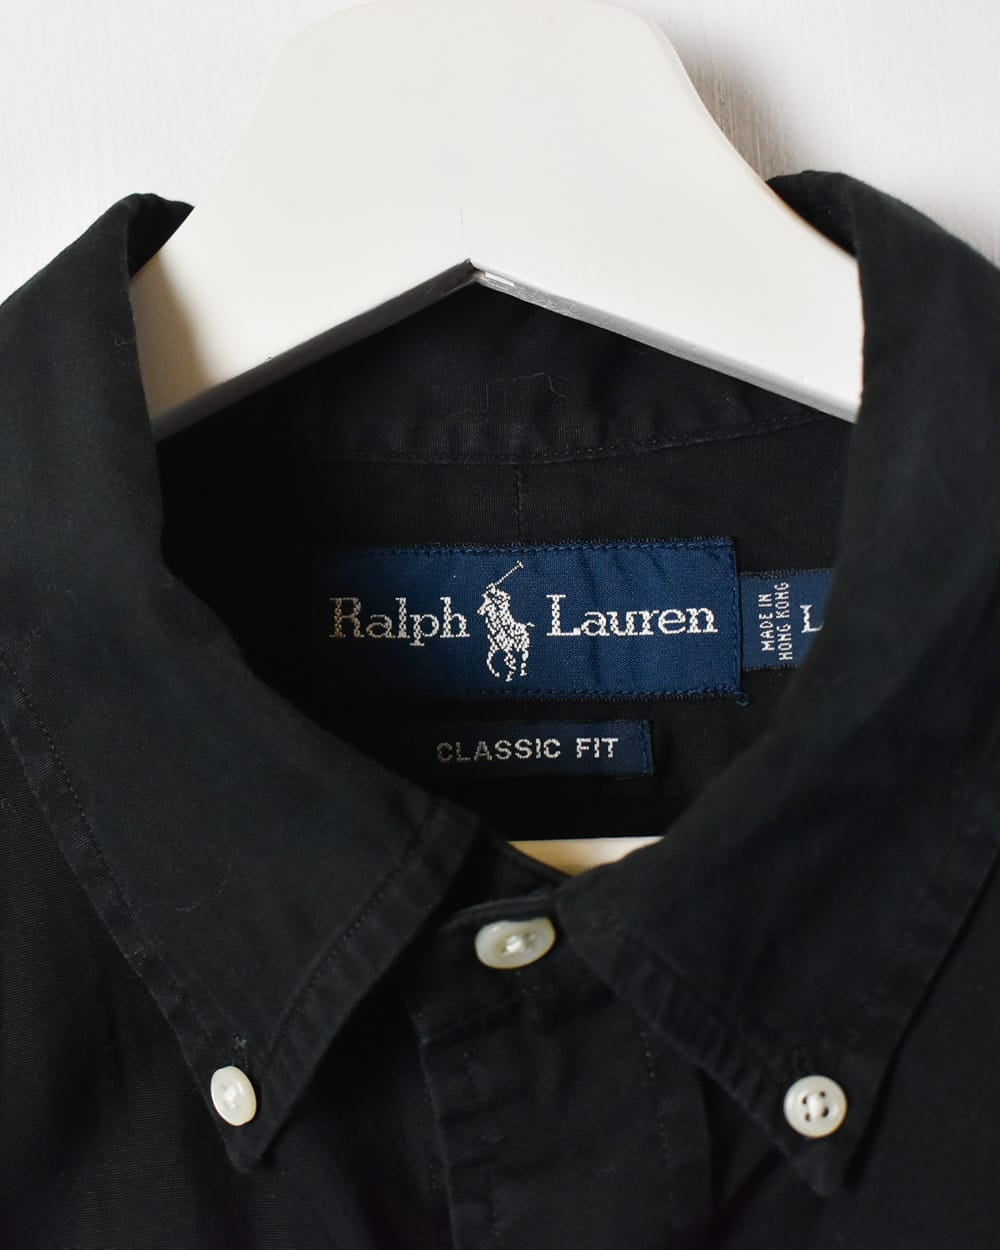 Black Polo Ralph Lauren Short Sleeved Shirt - Large